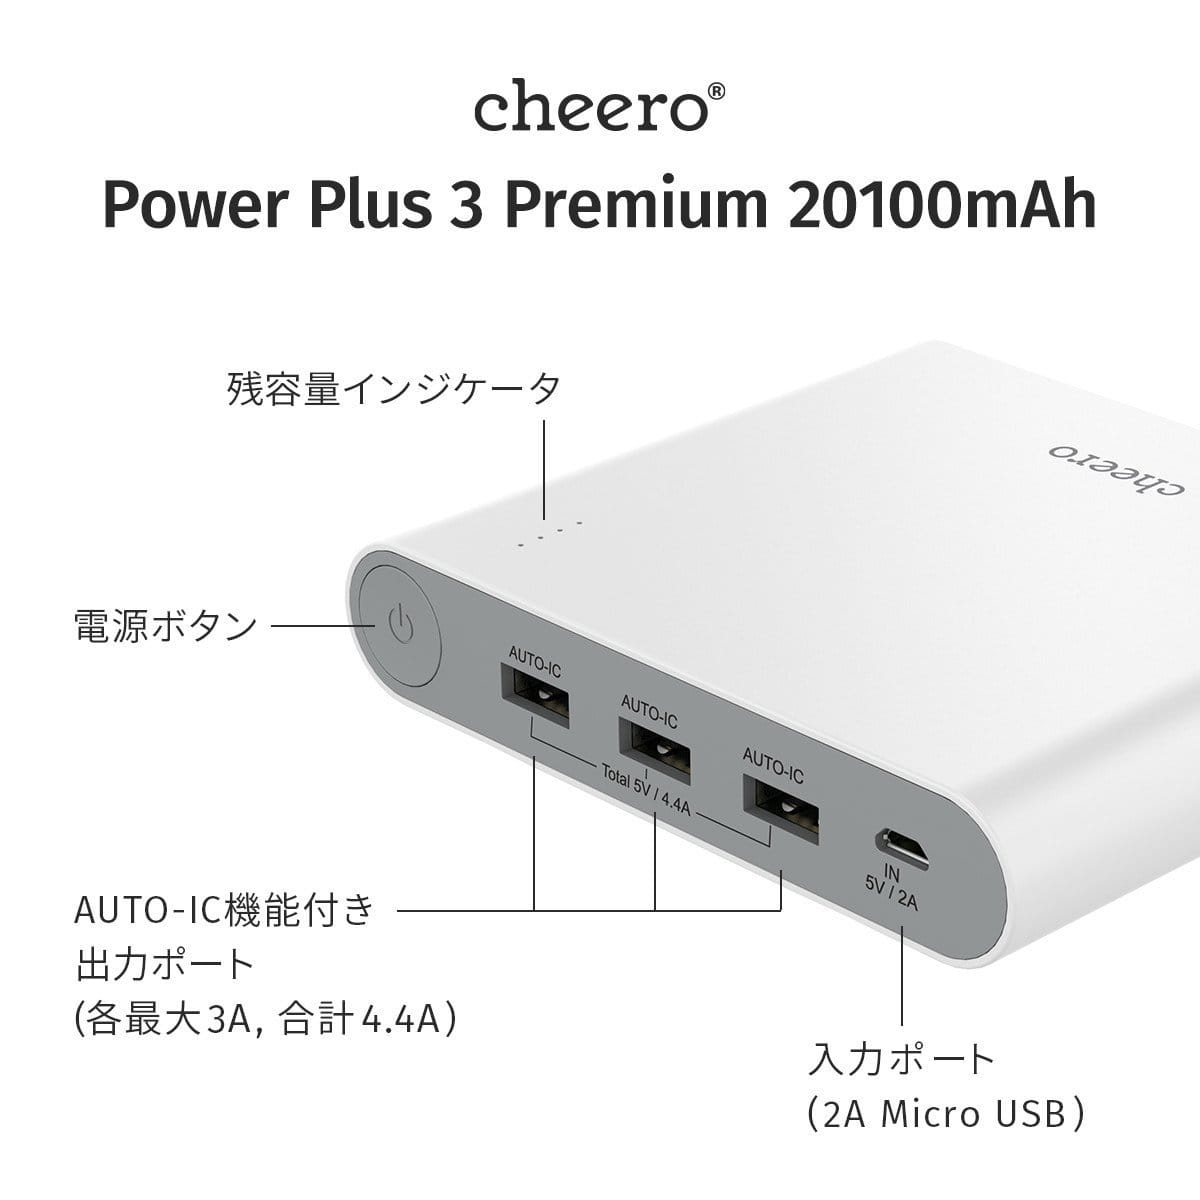 CheeroPowerPlus3 Premium 03